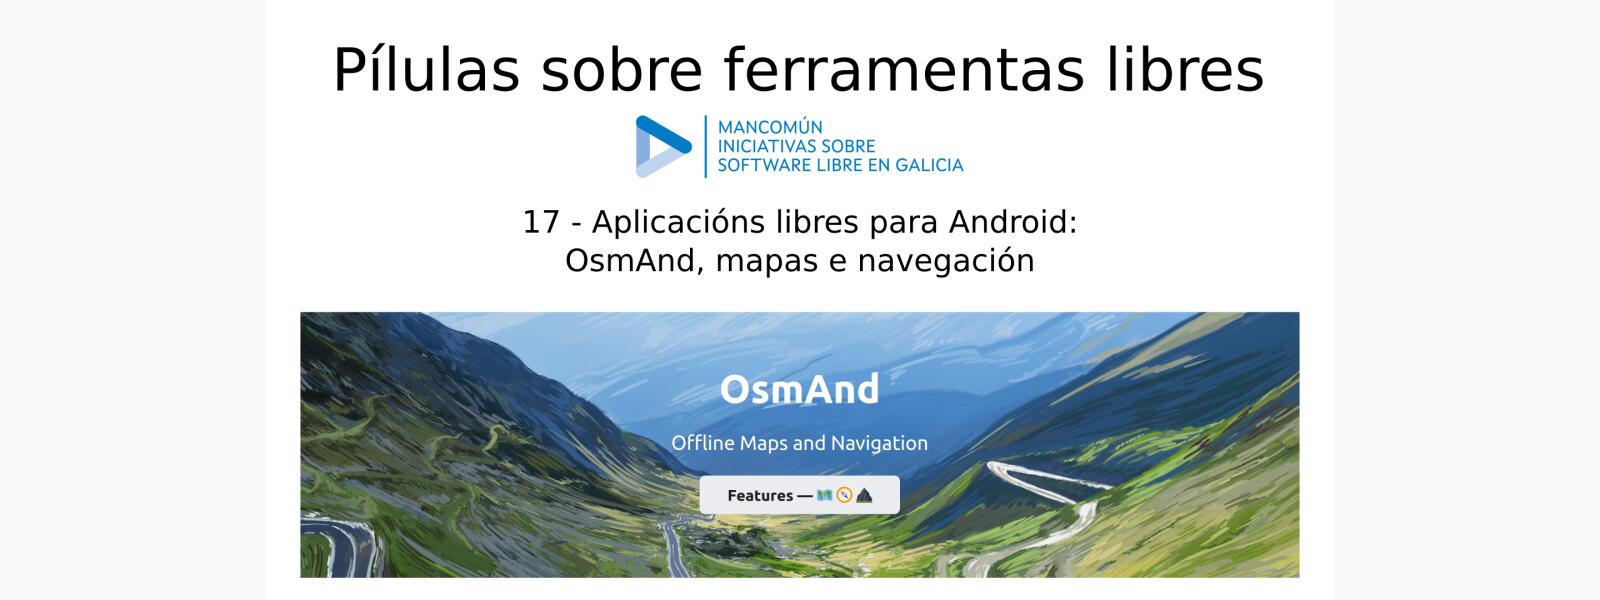 Aplicaciones libres para Android: OsmAnd, mapas y navegación